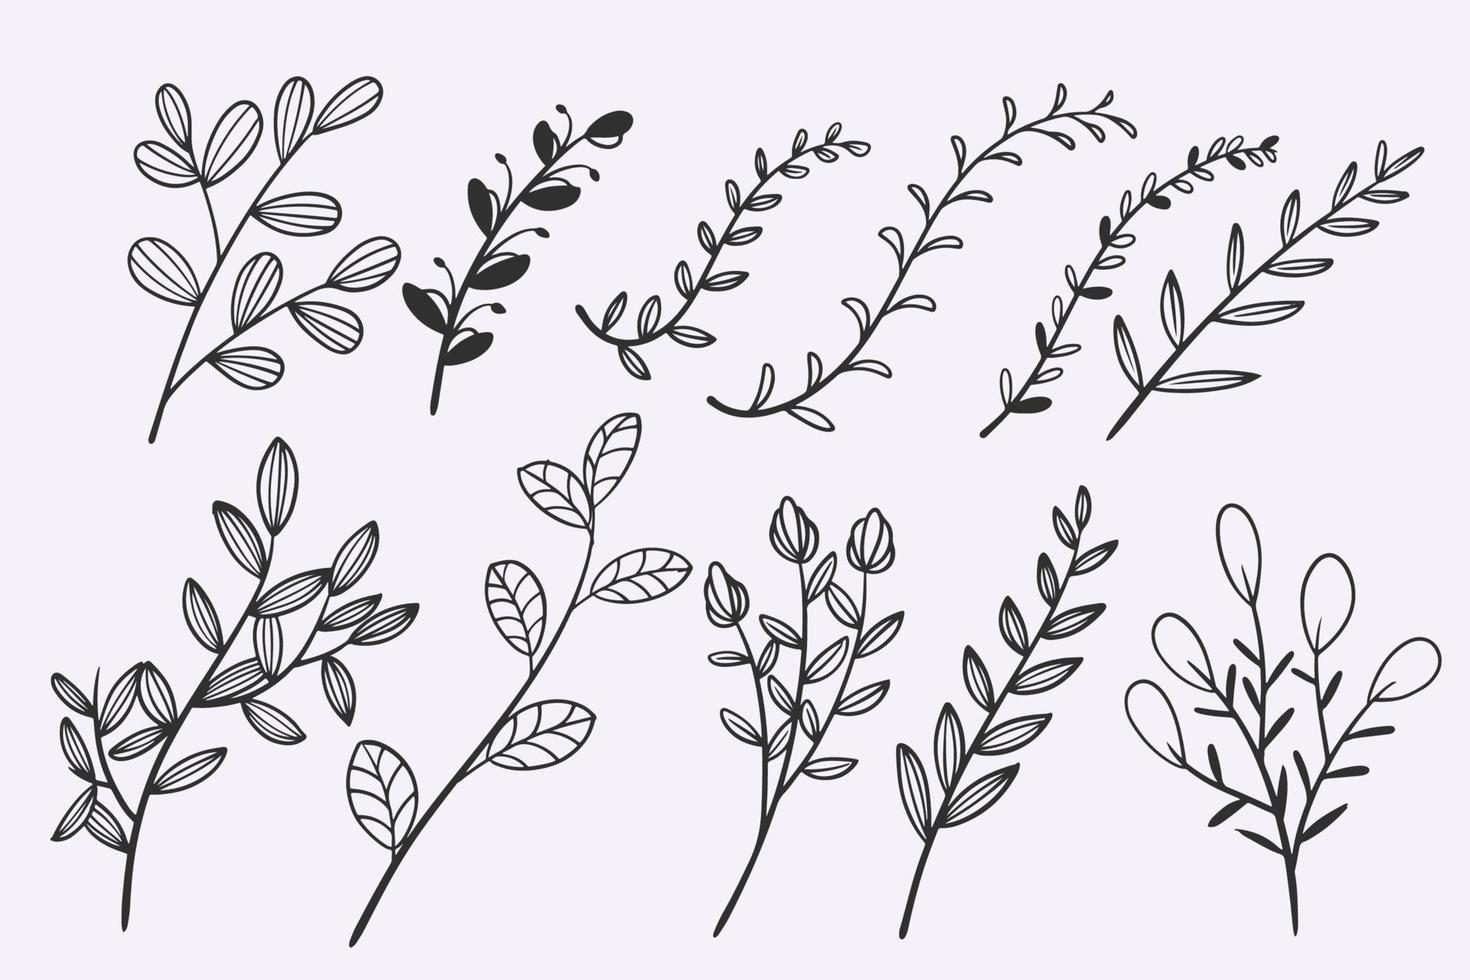 blomma lämnar doodle handritad vektor illustration set